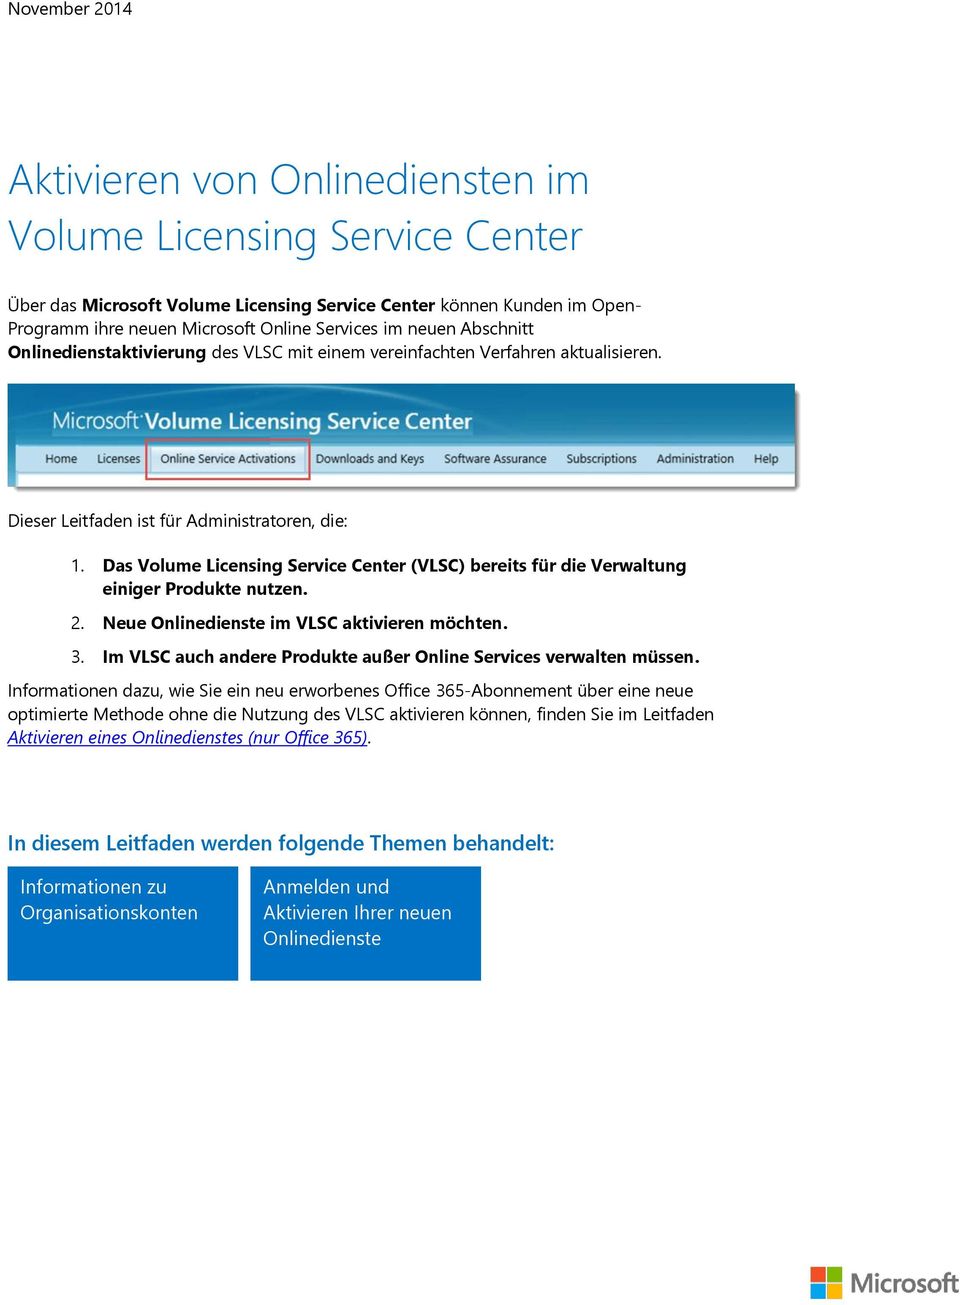 Das Volume Licensing Service Center (VLSC) bereits für die Verwaltung einiger Produkte nutzen. 2. Neue Onlinedienste im VLSC aktivieren möchten. 3.